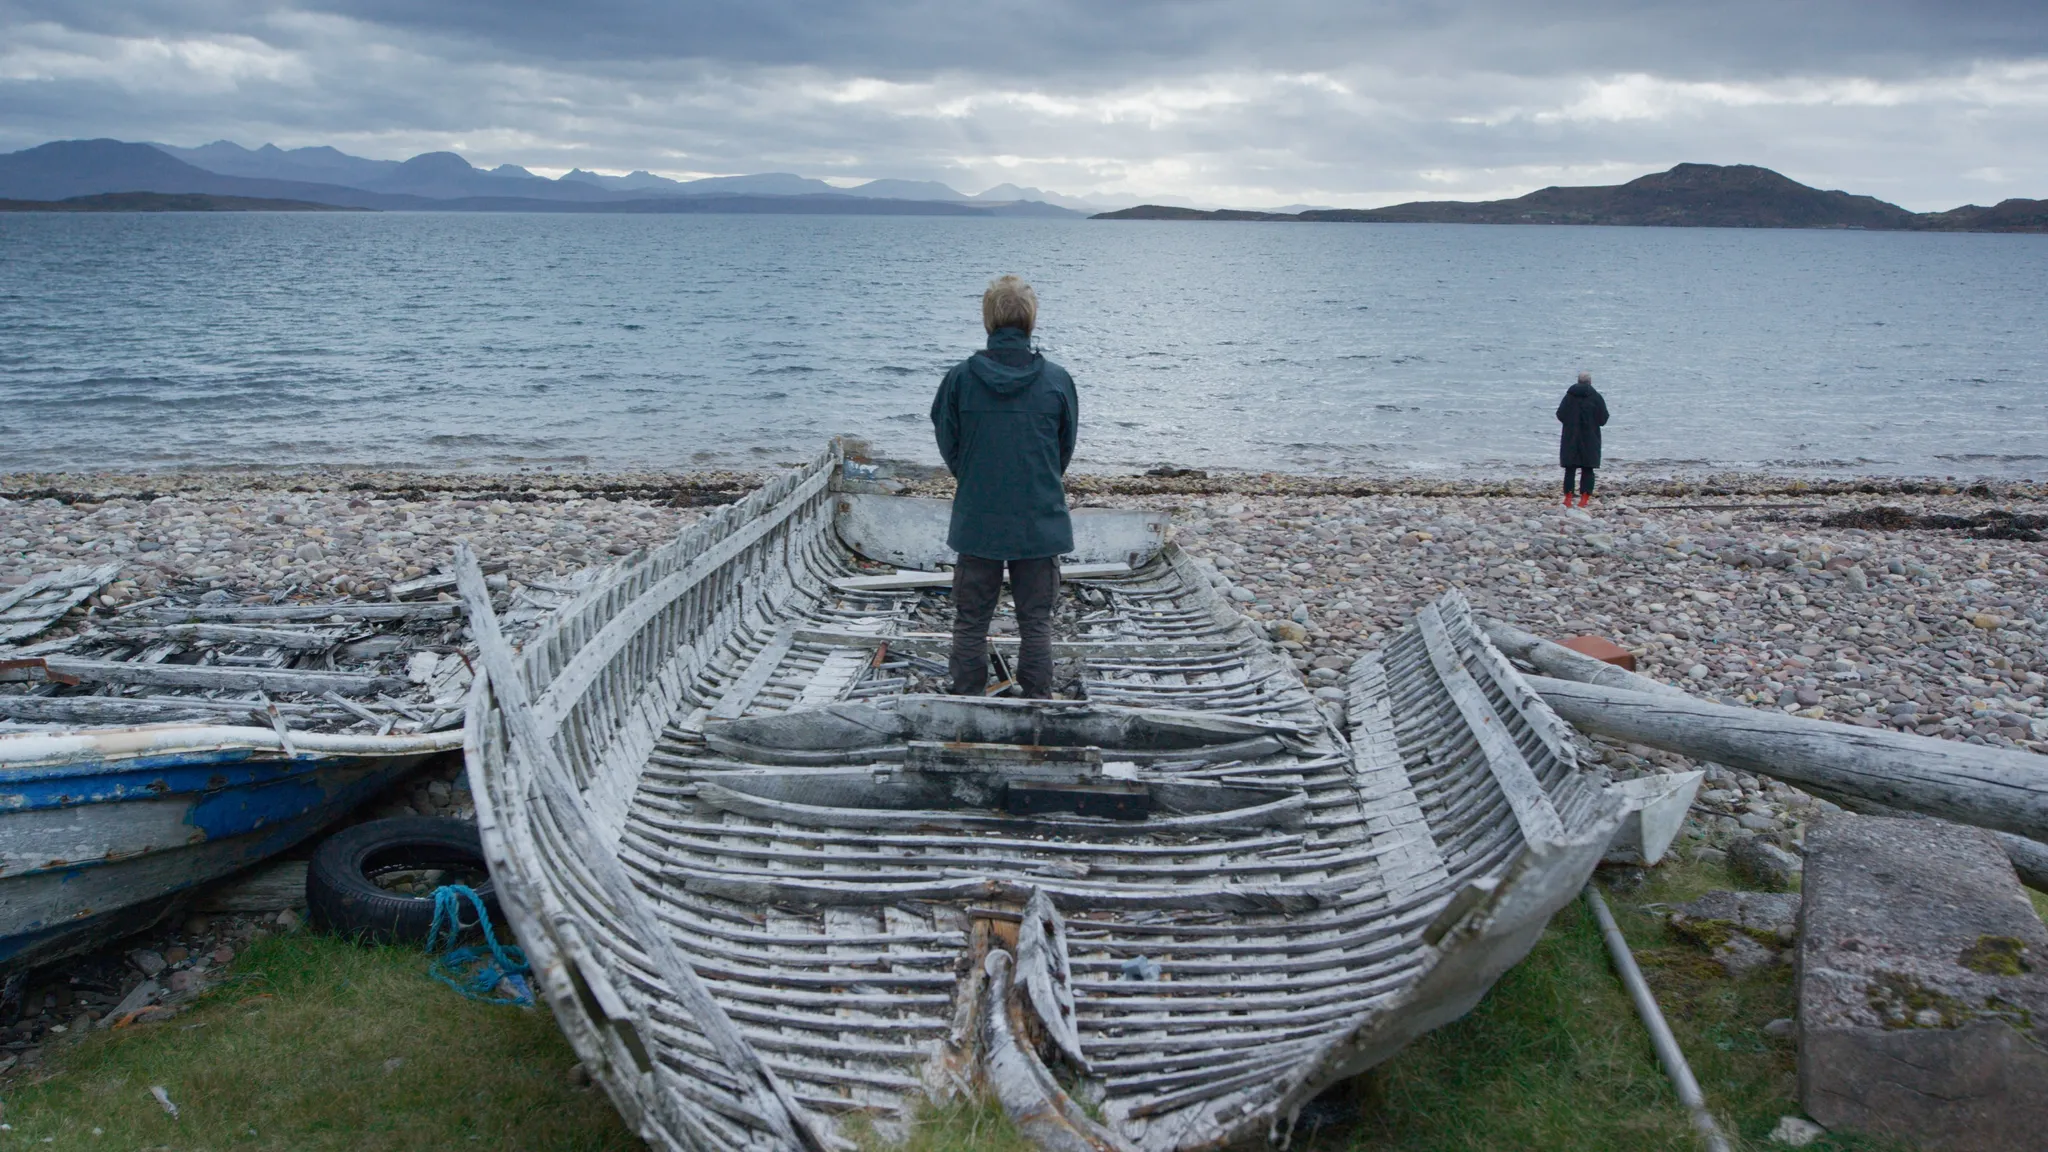 Een persoon staat op een wrak houten schip op een kiezelstrand, starend naar het water